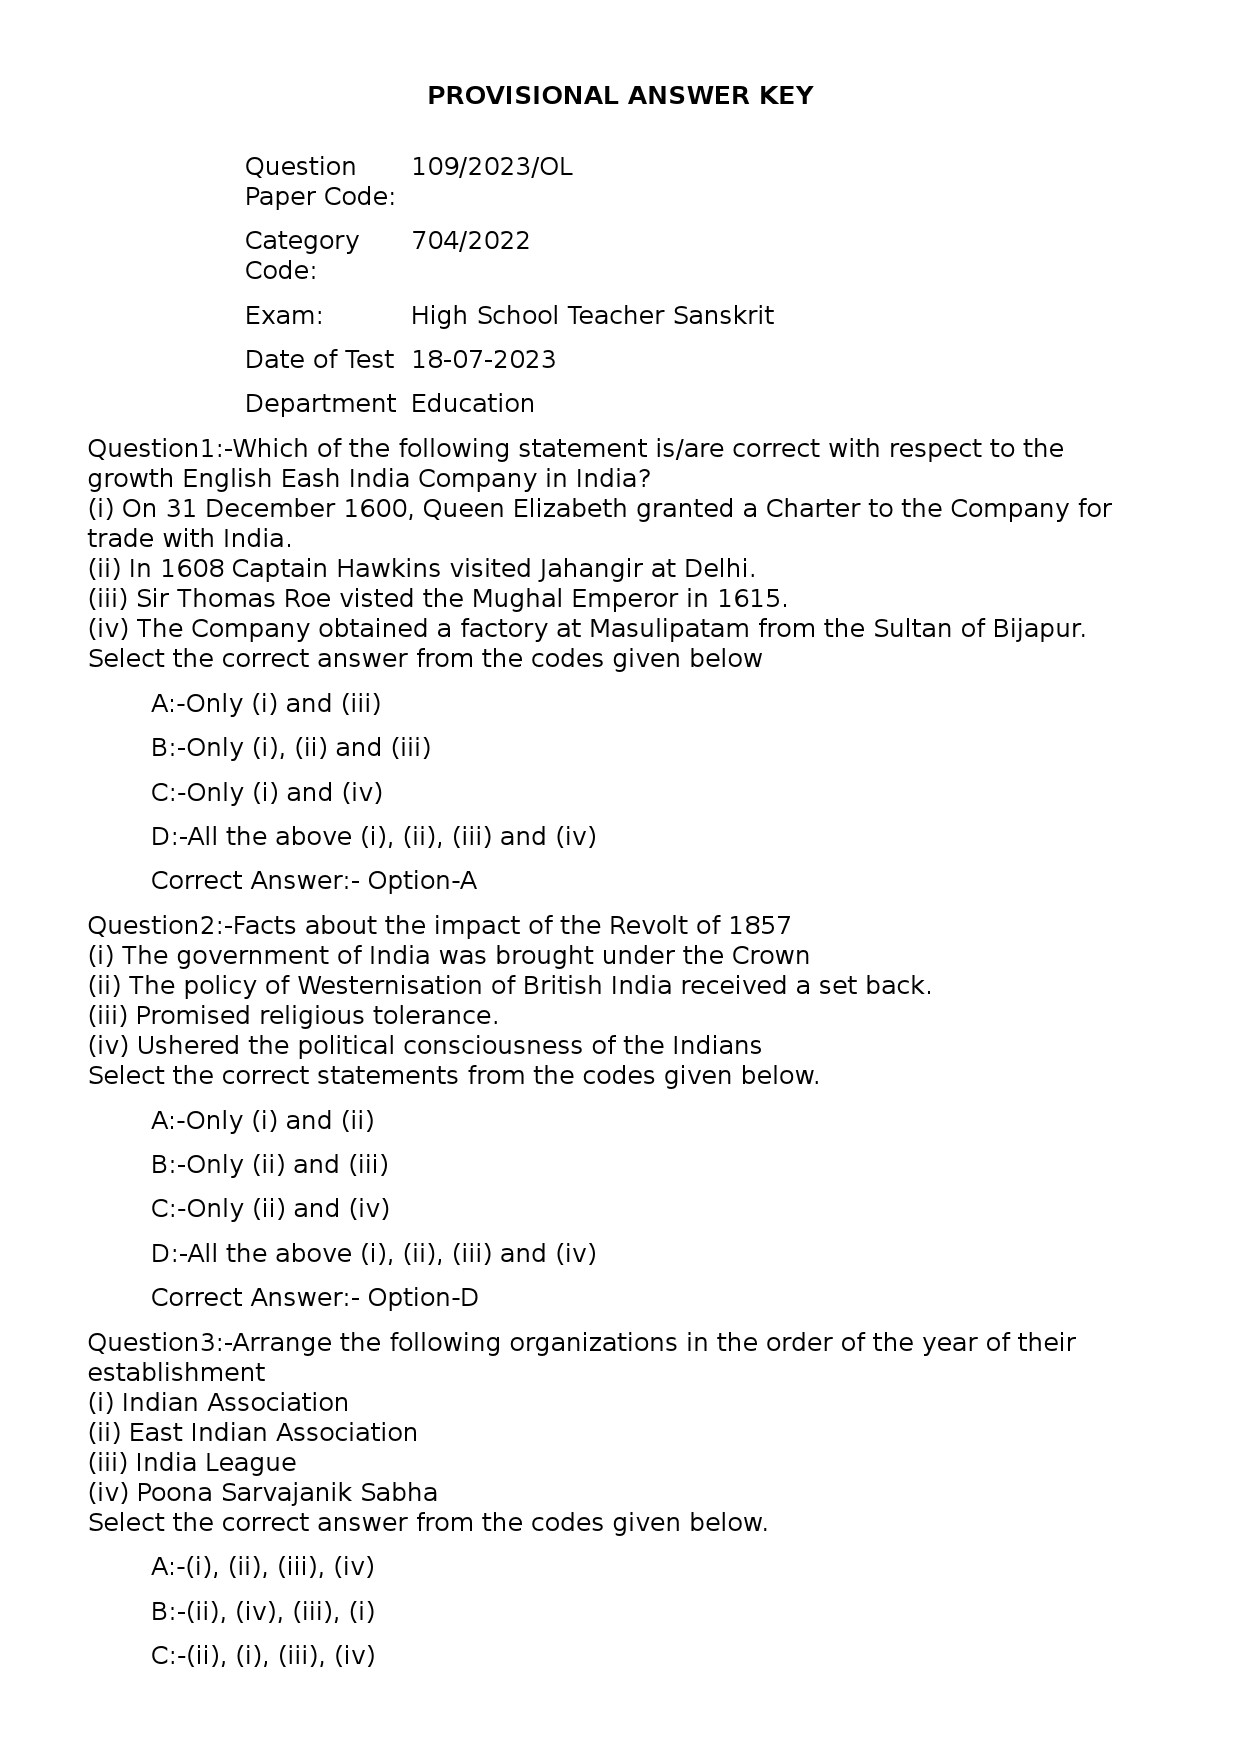 KPSC High School Teacher Sanskrit Exam 2023 Code 1092023OL 1